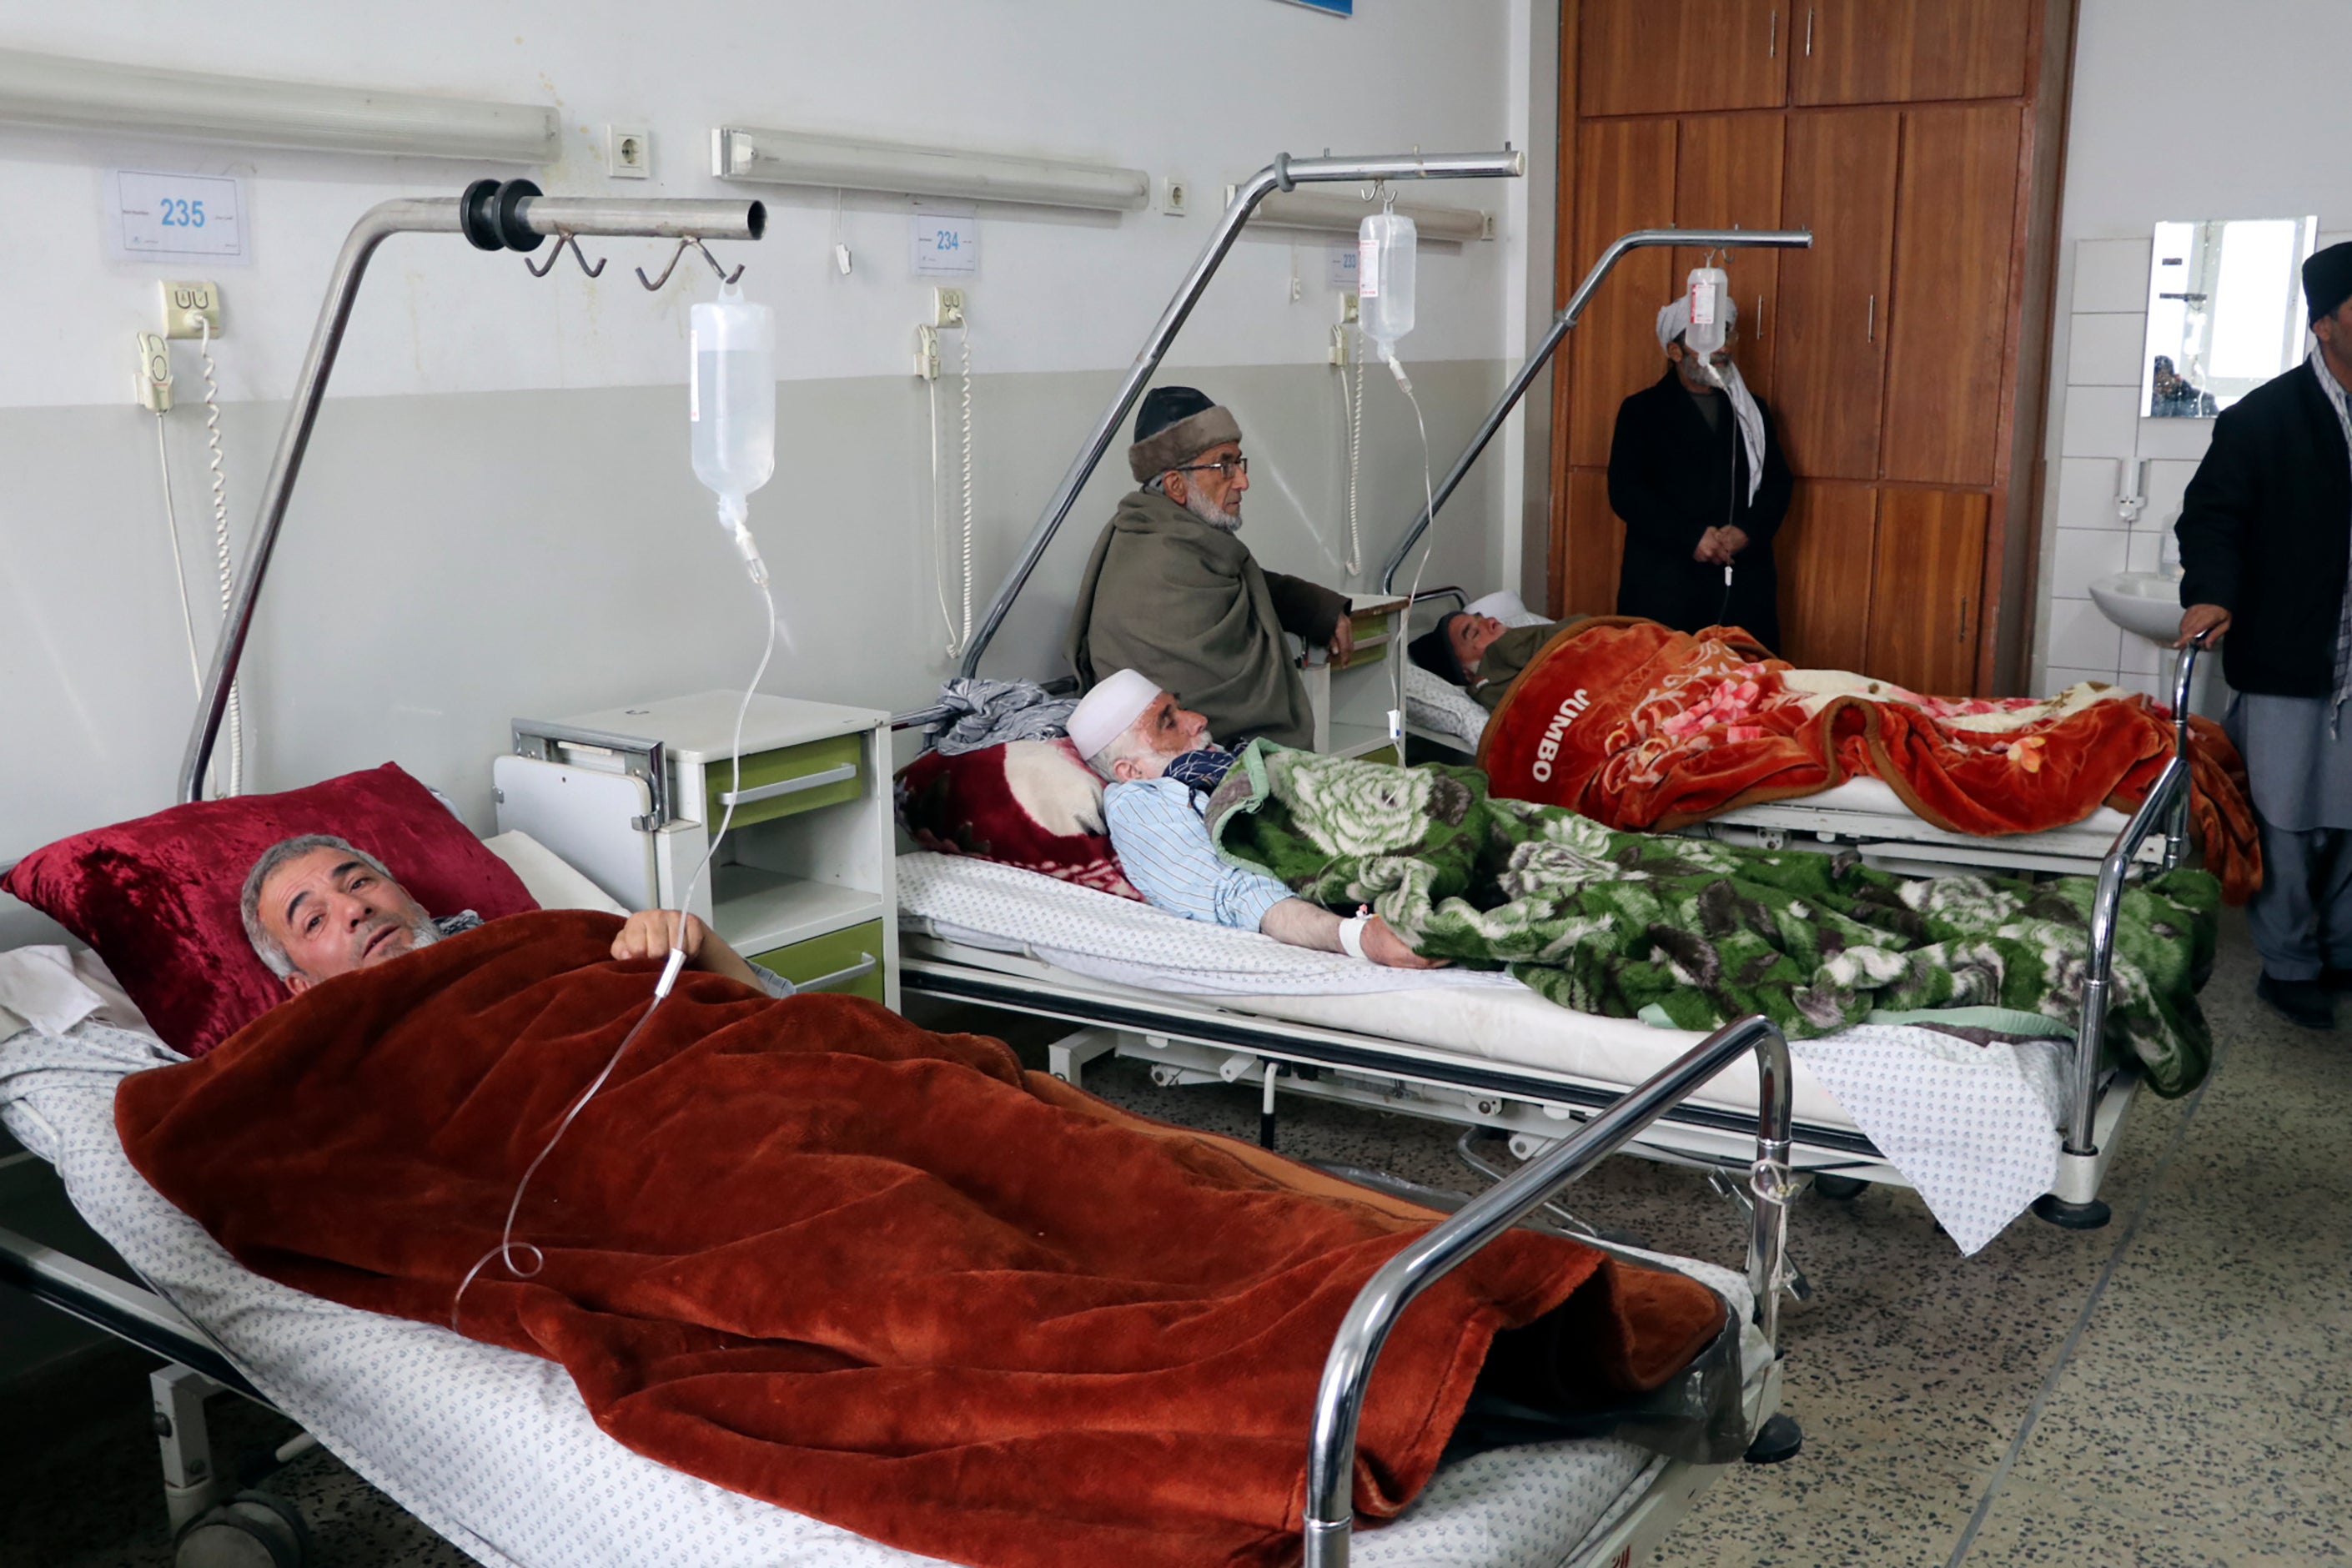 塔利班:阿富汗北部路边炸弹炸死6人